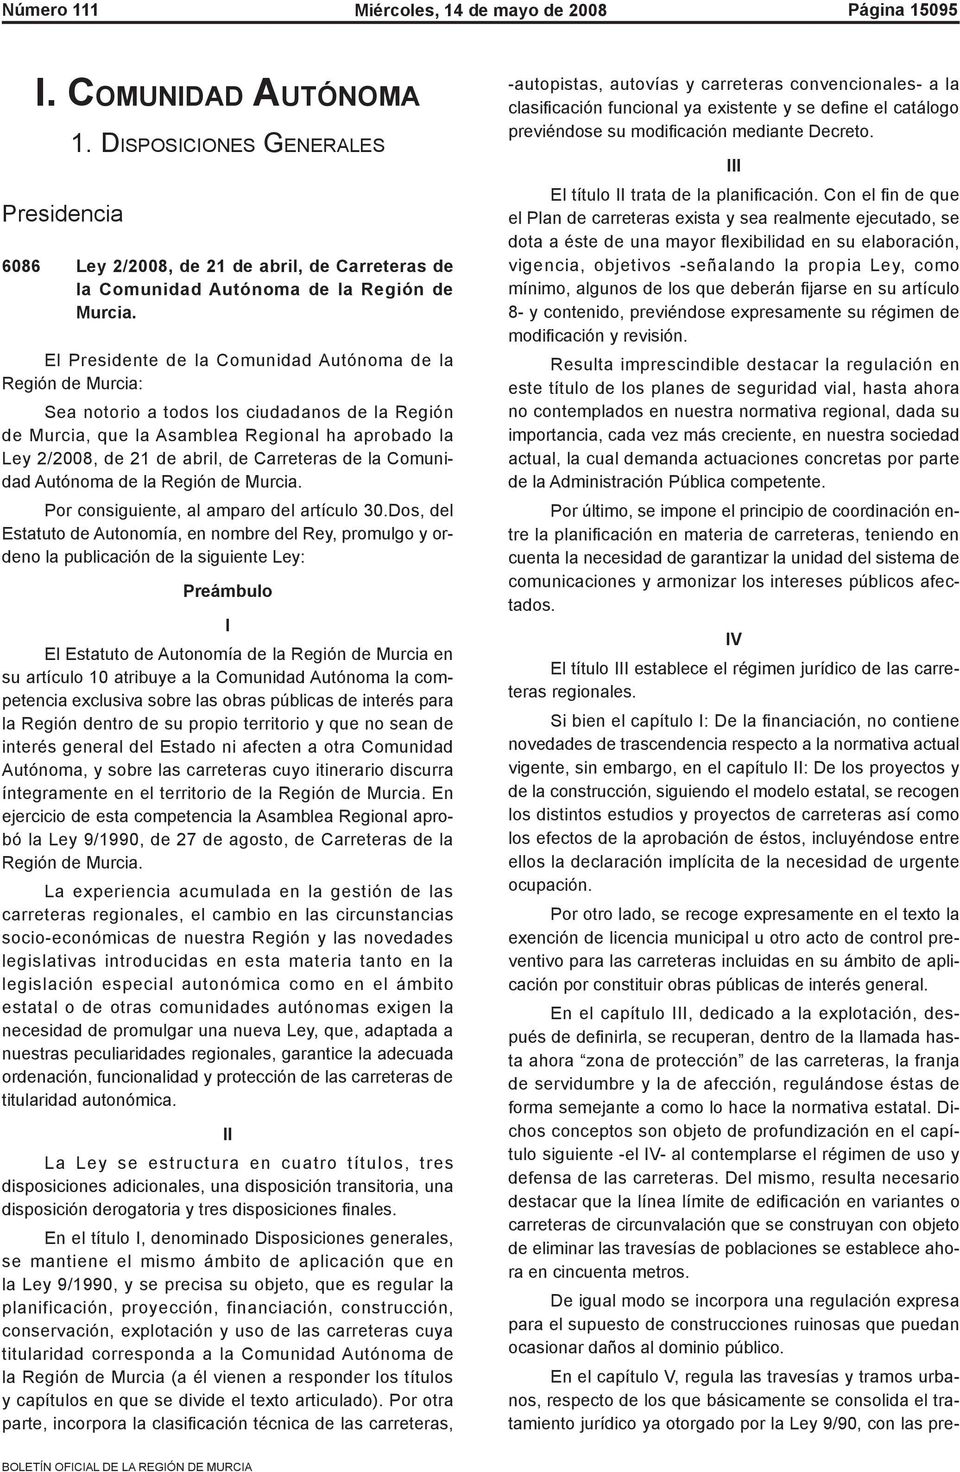 Carreteras de la Comunidad Autónoma de la Región de Murcia. Por consiguiente, al amparo del artículo 30.